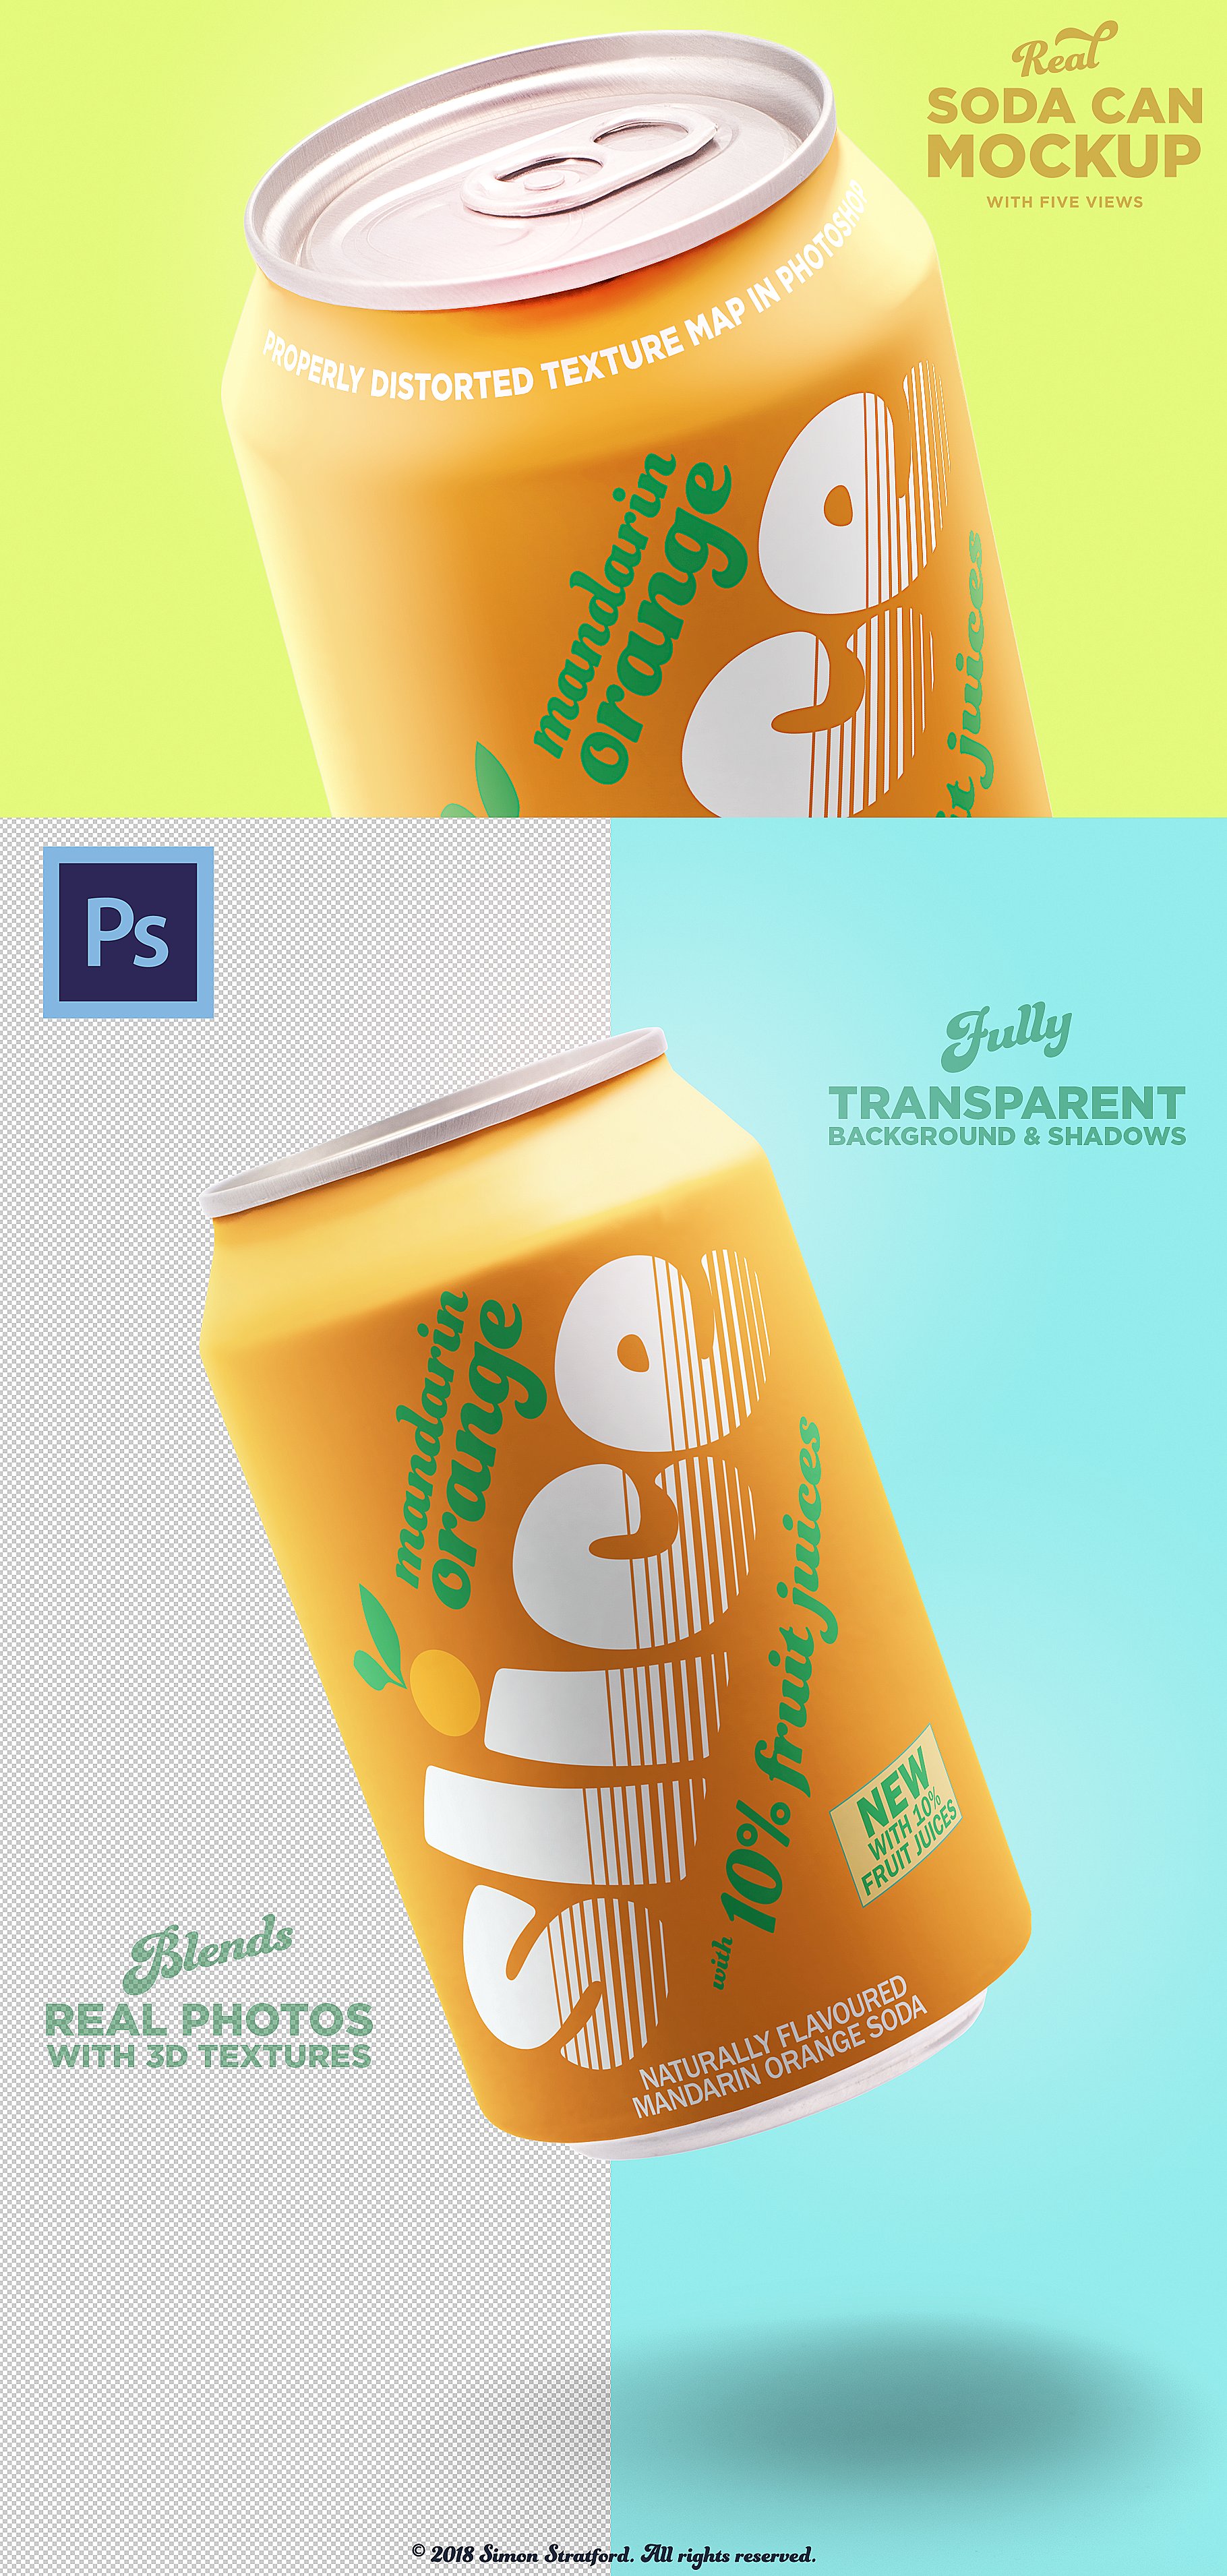 苏打水饮料易拉罐外观设计样机 Real soda can mockup for photoshop插图(2)